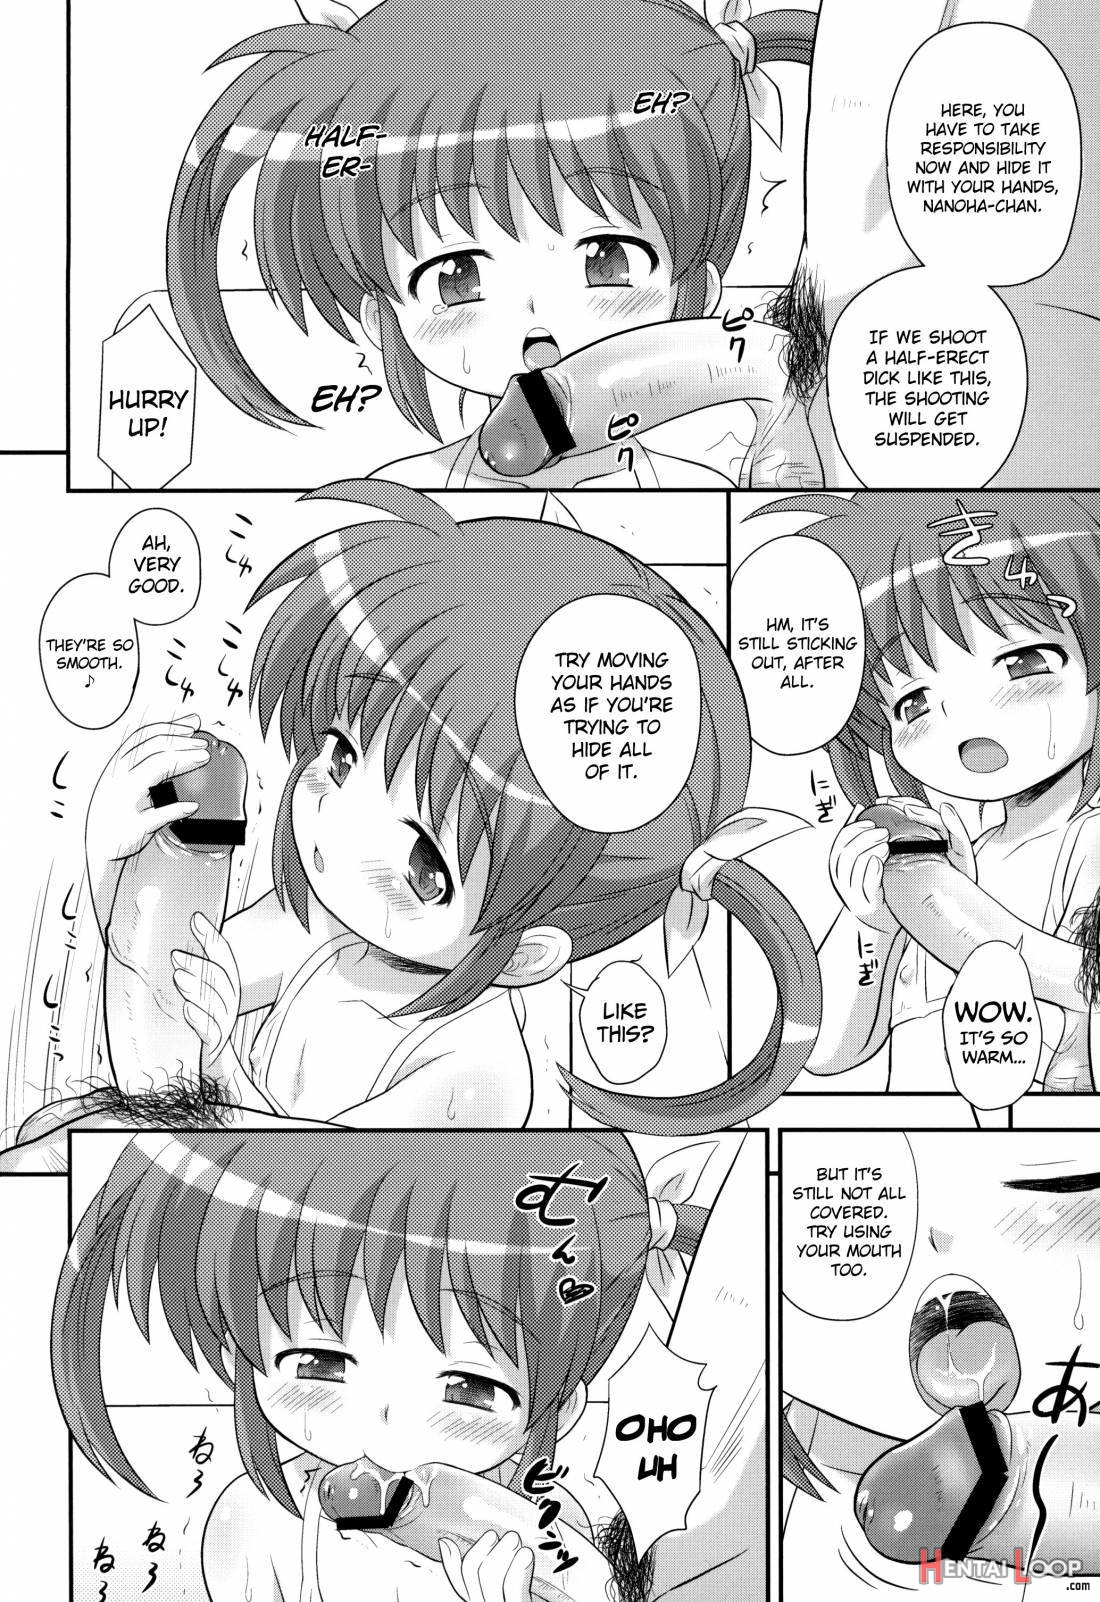 Nanoha-chan U-q page 7